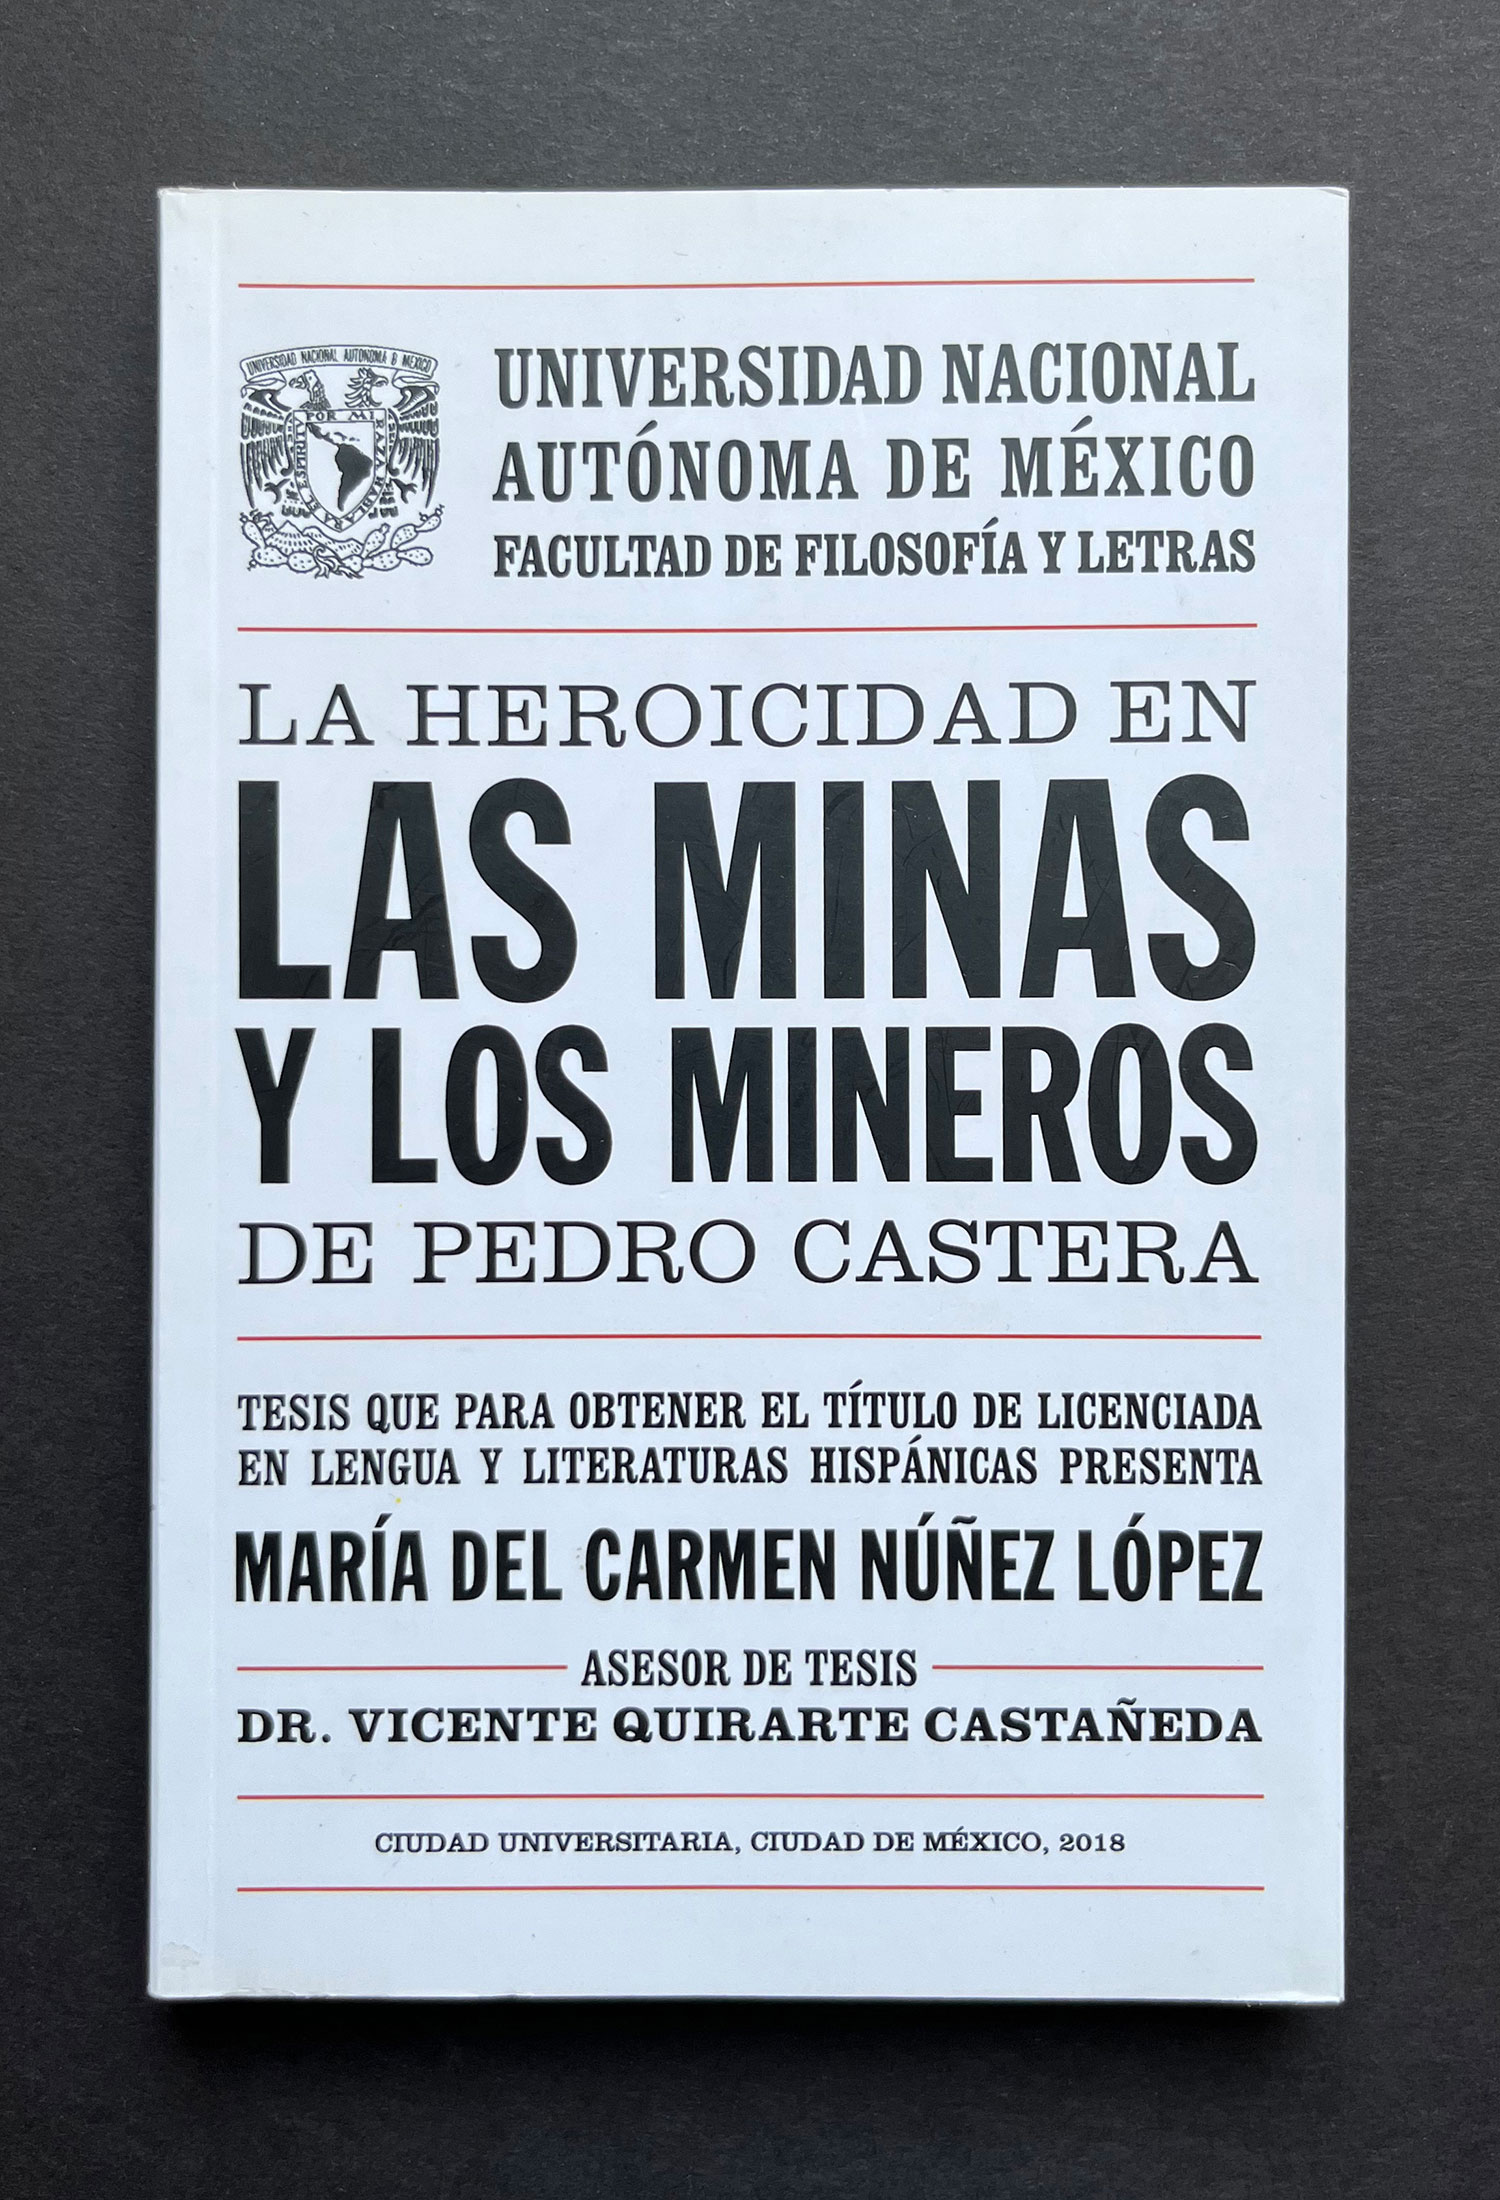 La heroicidad en Las minas y los mineros de Pedro Castera